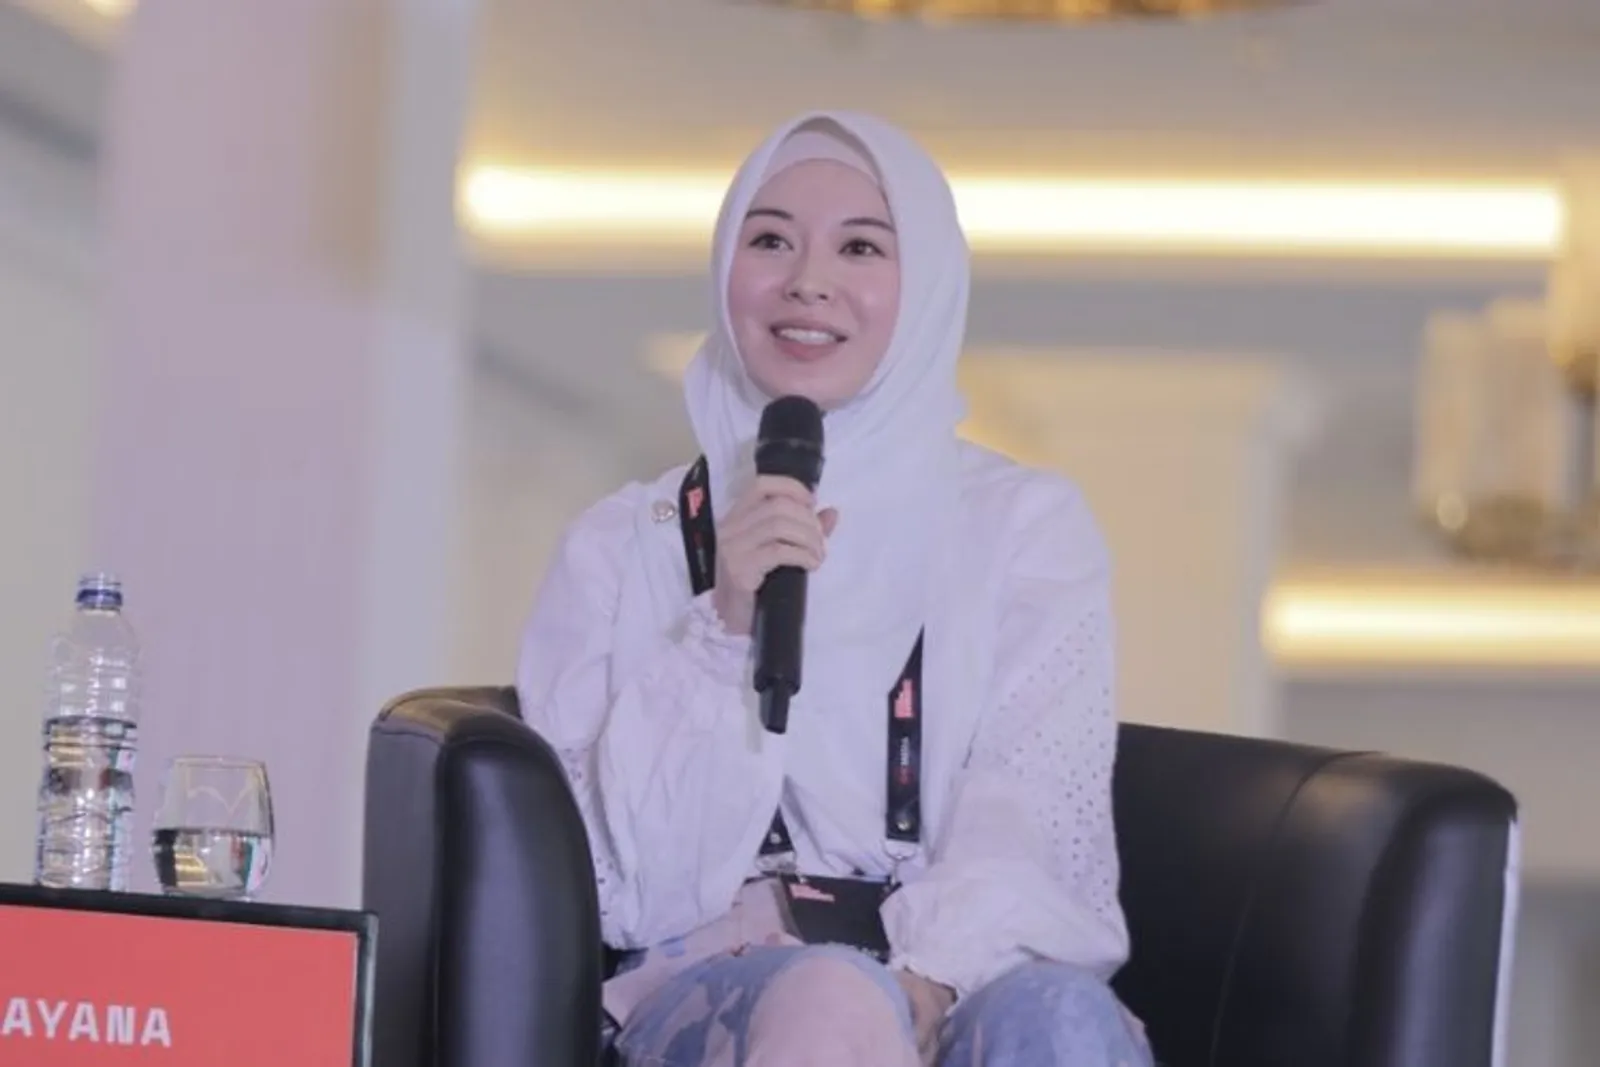 #IMS2020: Ayana Moon Bersyukur karena Orang Indonesia Baik Kepadanya